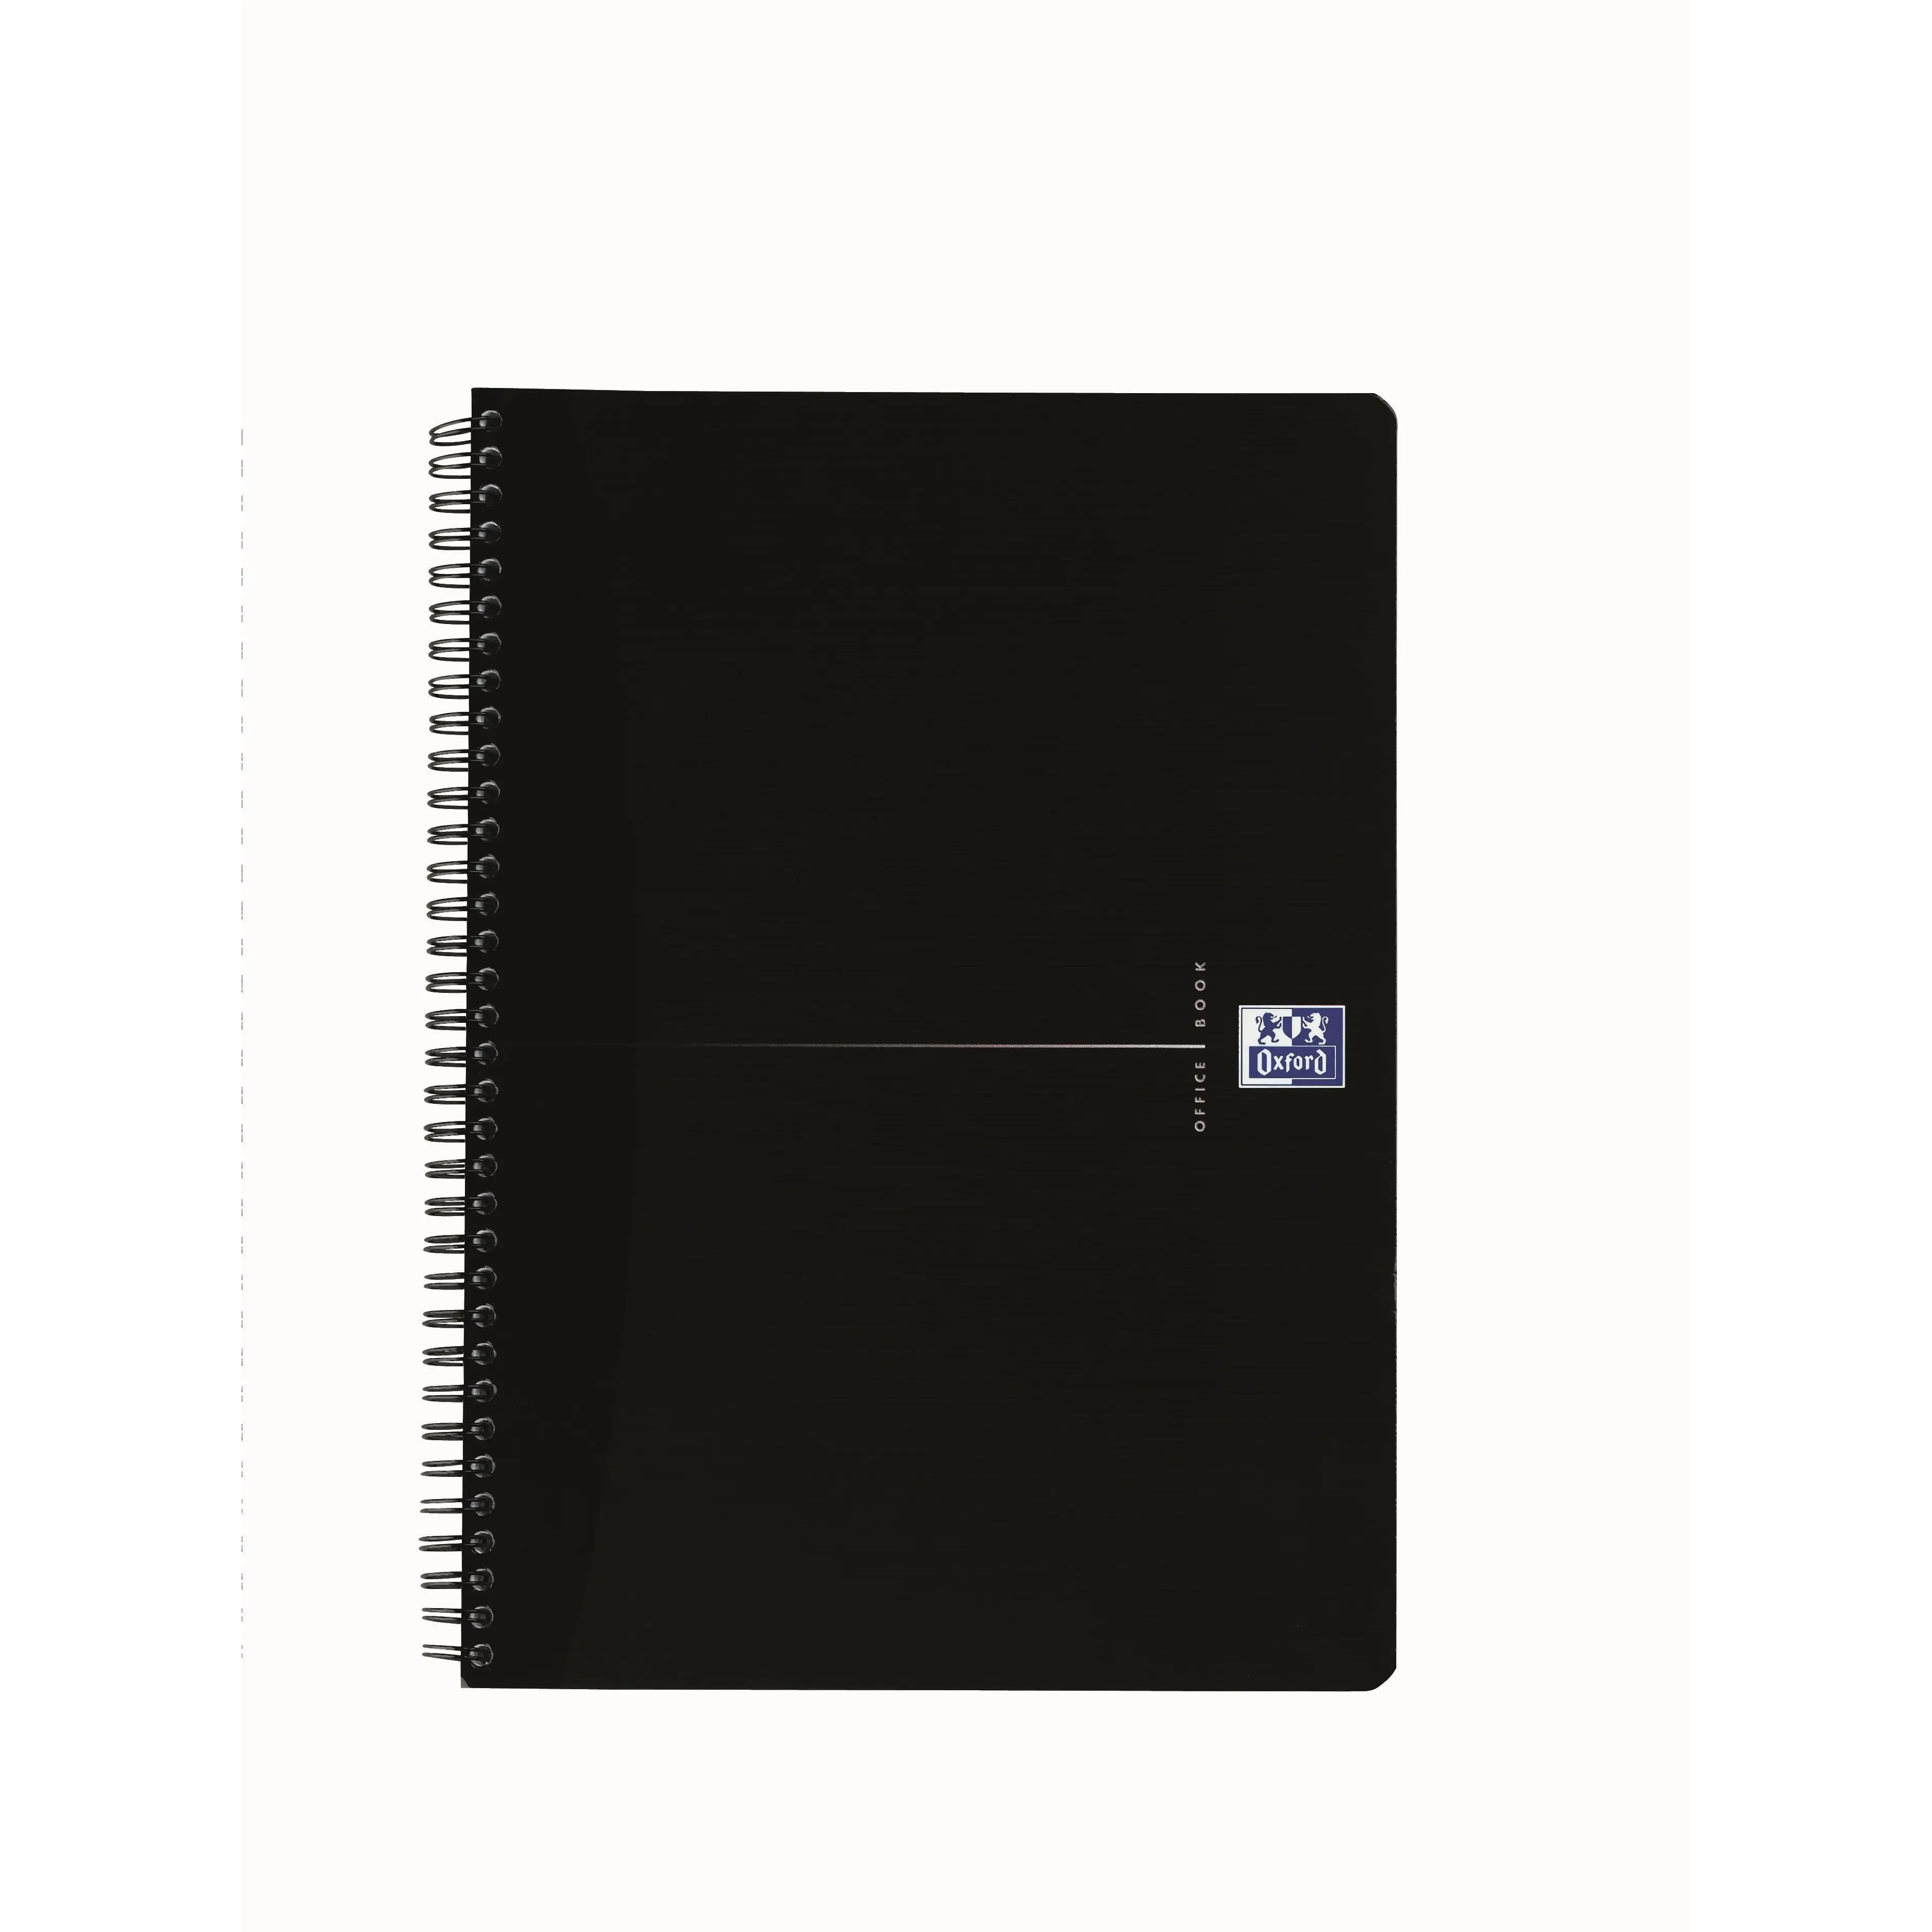 jury skolde Barnlig Notesbog A4 sort kunst læder omslag med linieret papir BNT - 96 sider - Køb  billigt på Grafical.dk